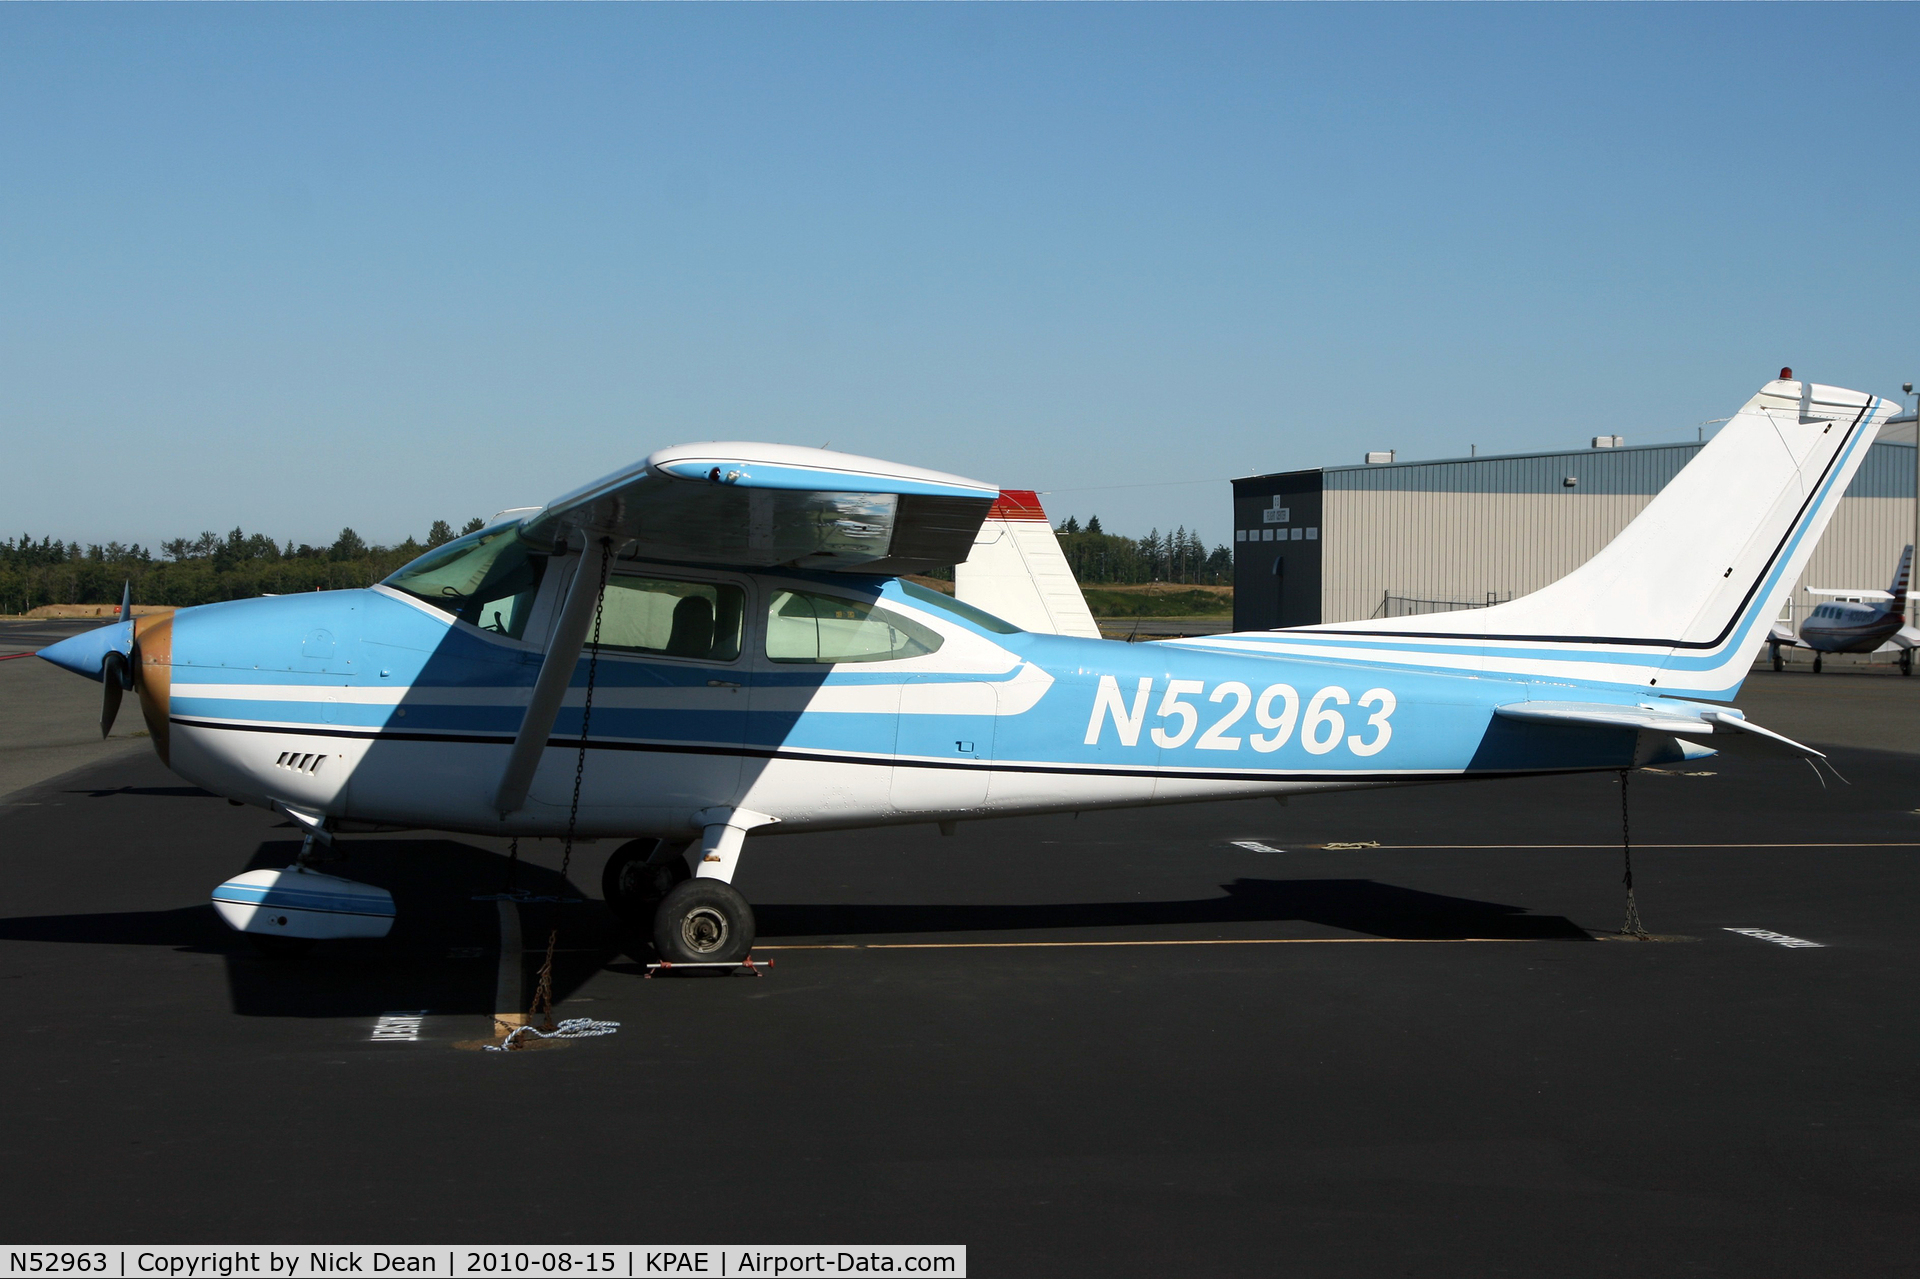 N52963, 1974 Cessna 182P Skylane C/N 18262976, KPAE 38th anniversary of beginning spotting 8/15/72